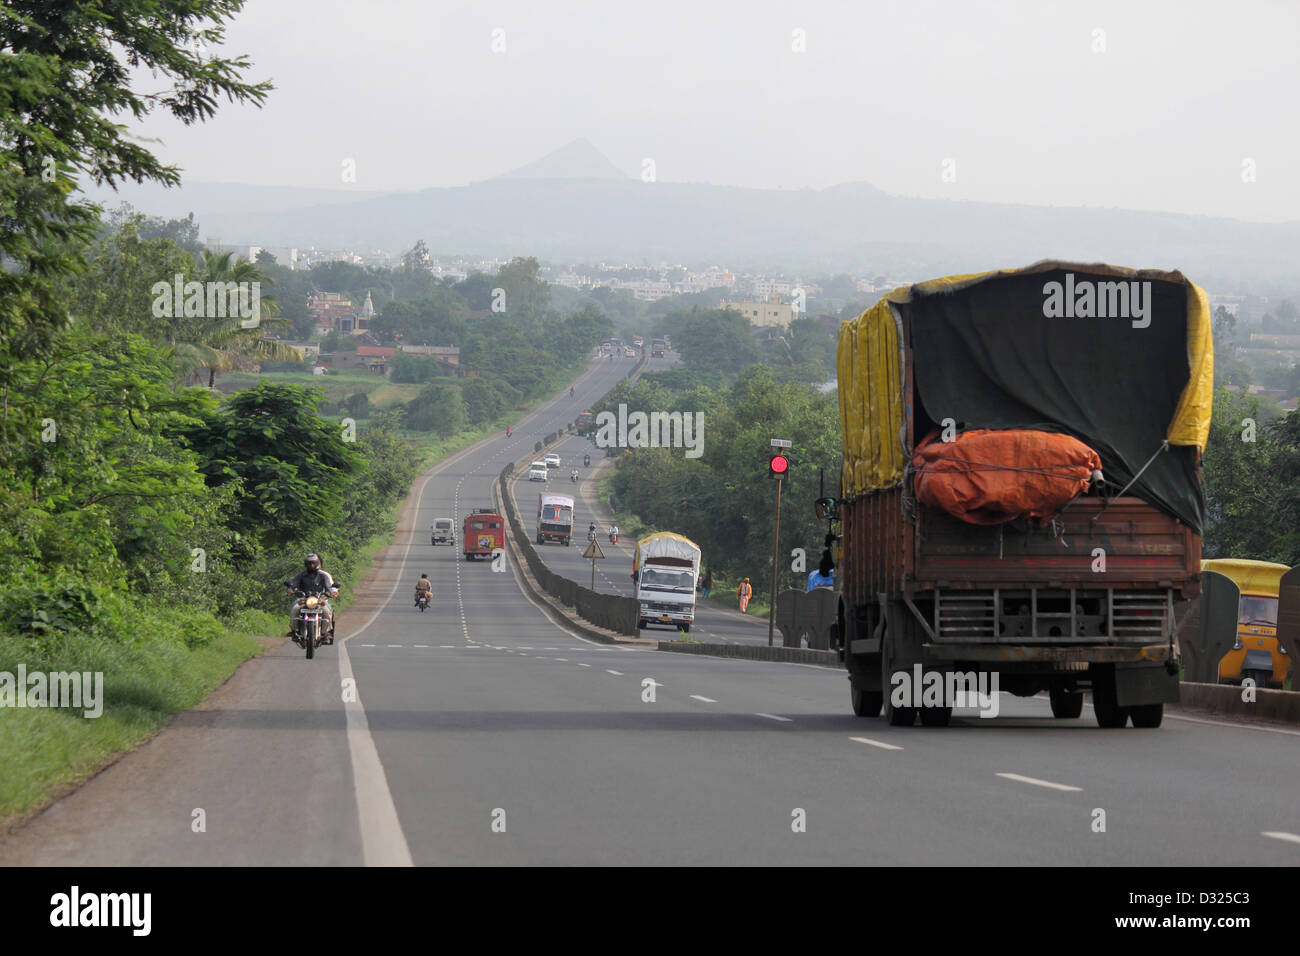 Pune Nashik highway Stock Photo, Royalty Free Image: 53523235 - Alamy